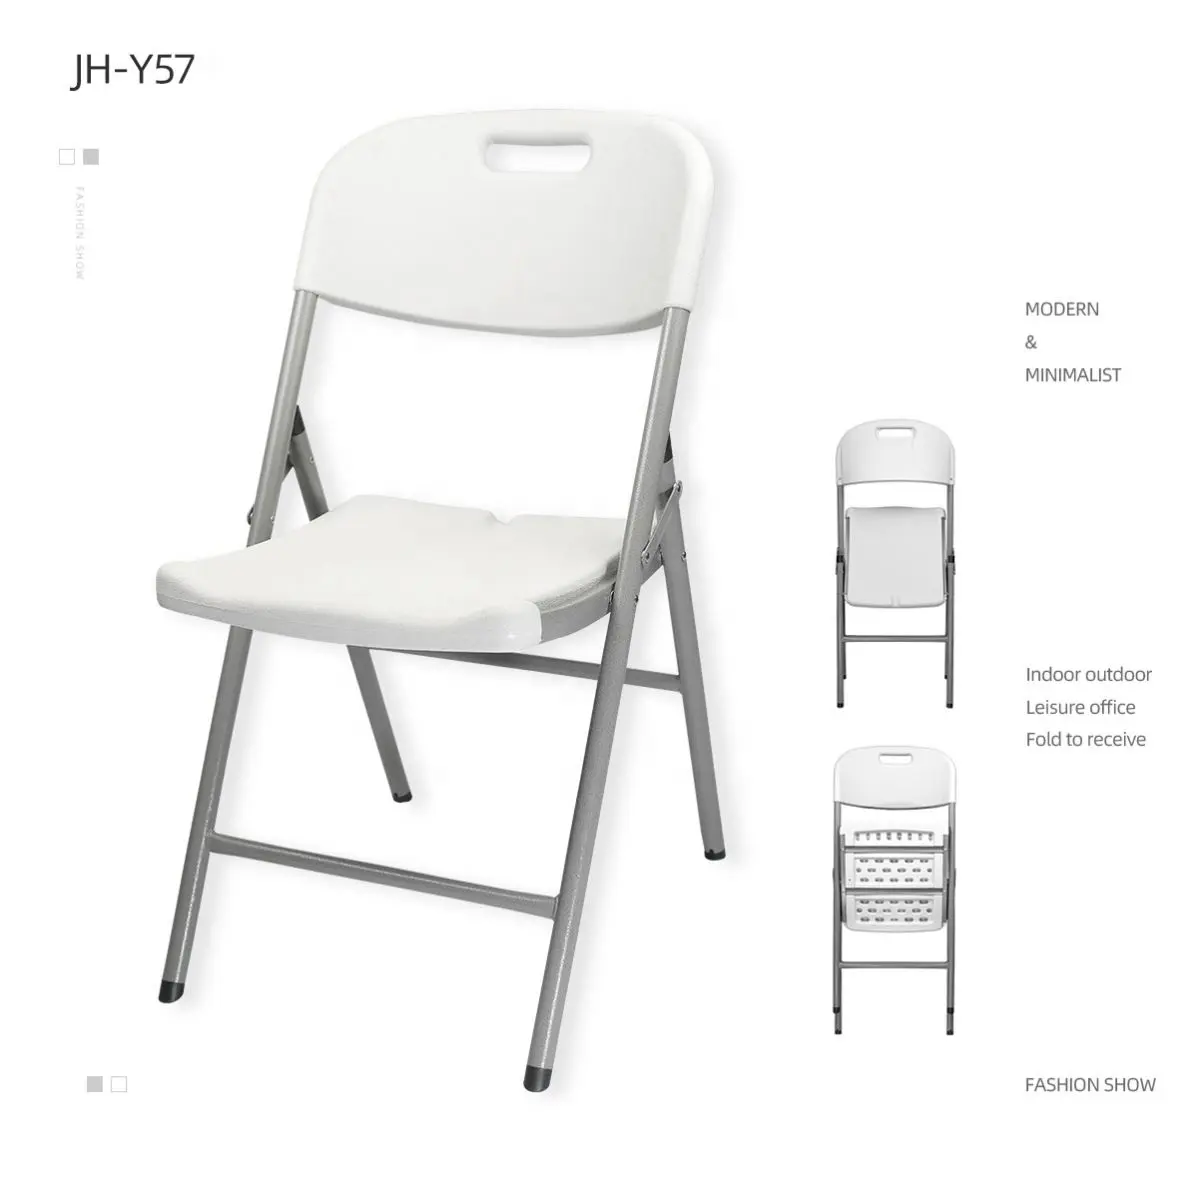 बड़ी कीमत के साथ प्लास्टिक कुर्सी मोल्डिंग मशीन बनाने के लिए नया डिजाइन